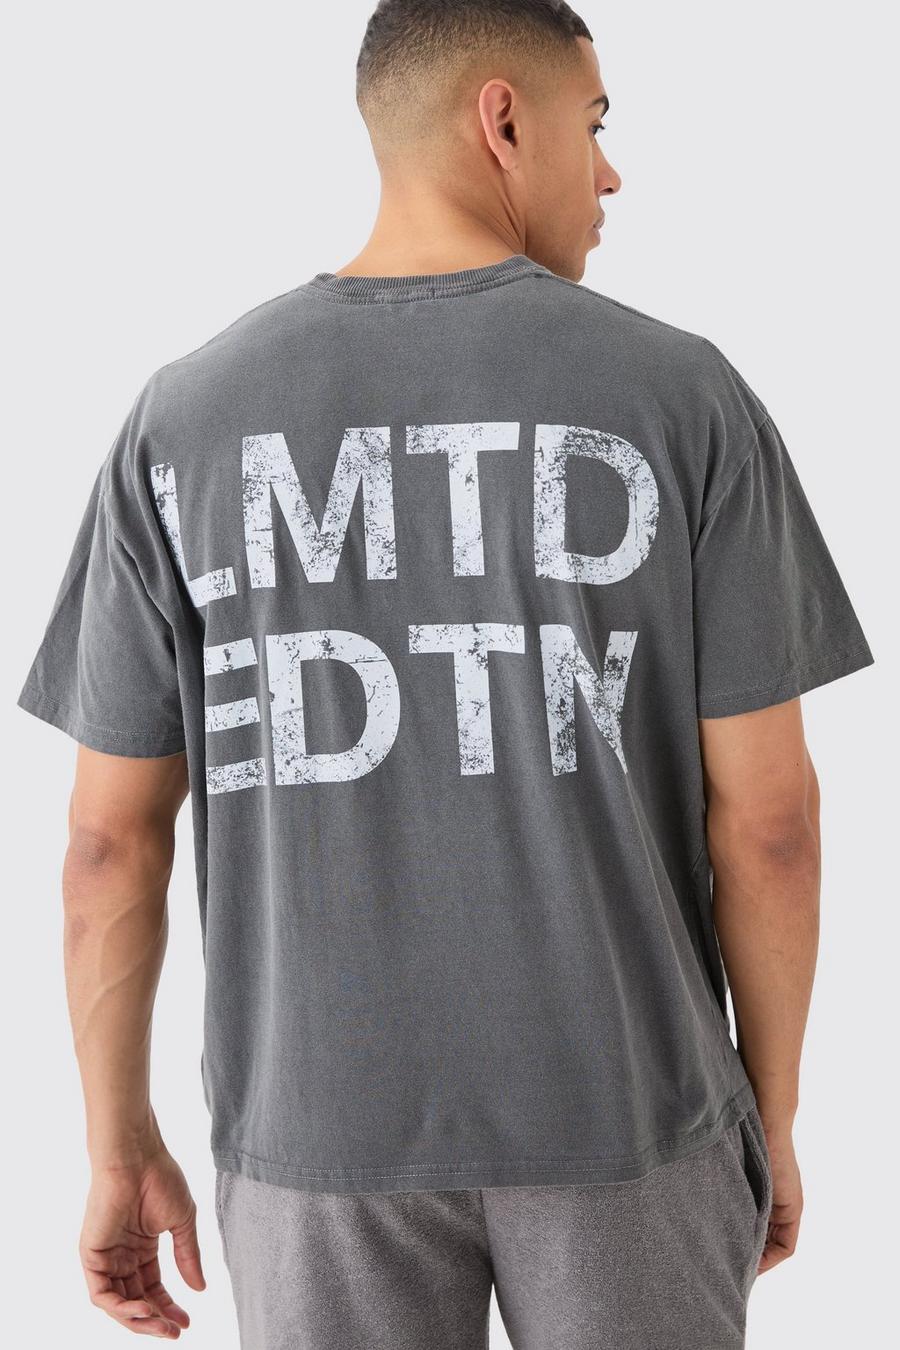 Charcoal Lmtd Oversize Urblekt t-shirt